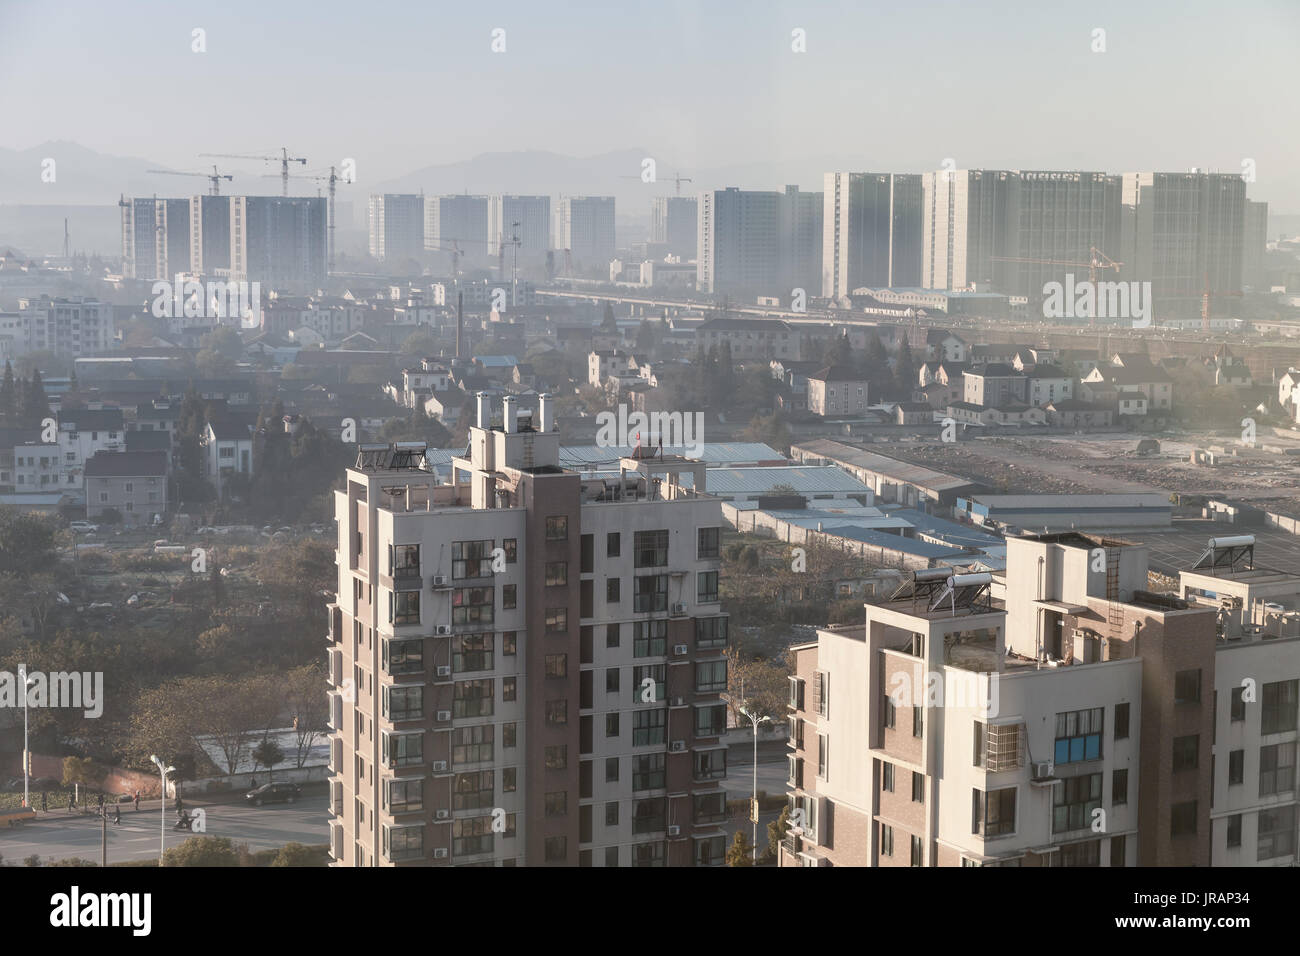 Stadtbild der Stadt Hangzhou, China. Wohnblock, lebenden Häuser Stockfoto